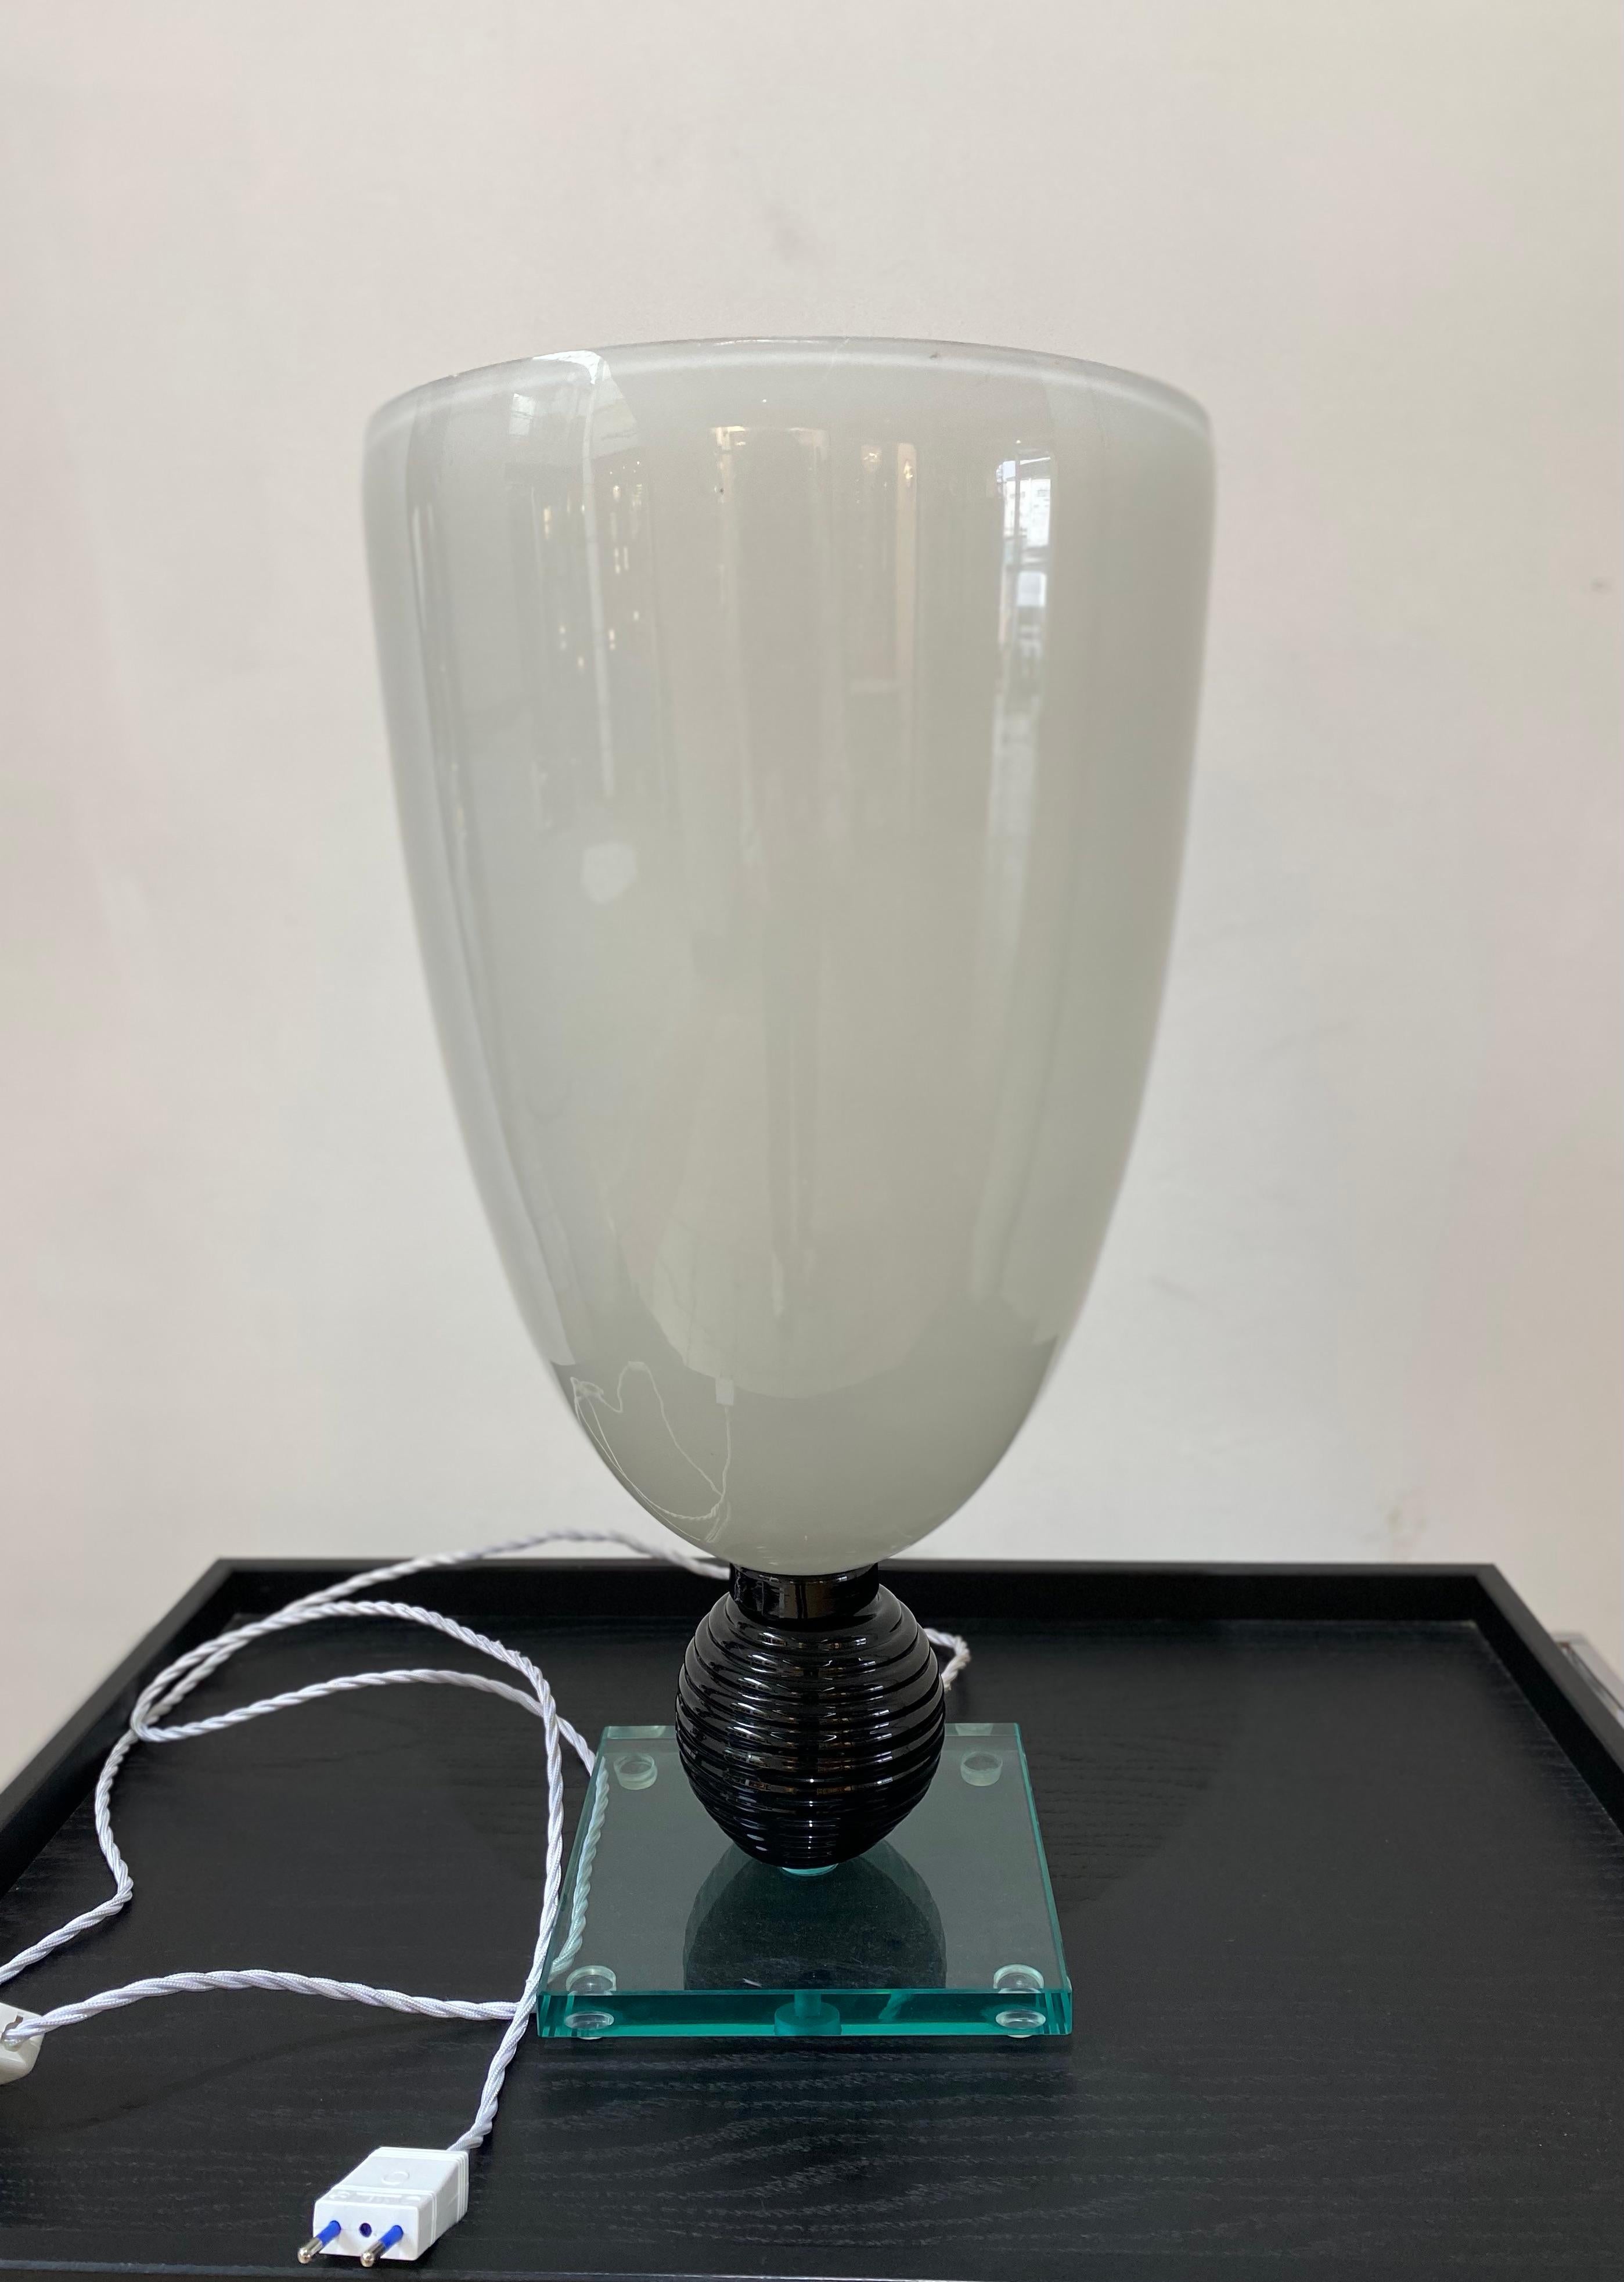 Lampe blanche en verre de Murano
Circa : 1980
Dimension : Hauteur : 57 cm, diamètre : 29,5 cm , 
Fiche UE
Réf : c 1894/15
Prix : 1600€ pour cette lampe.